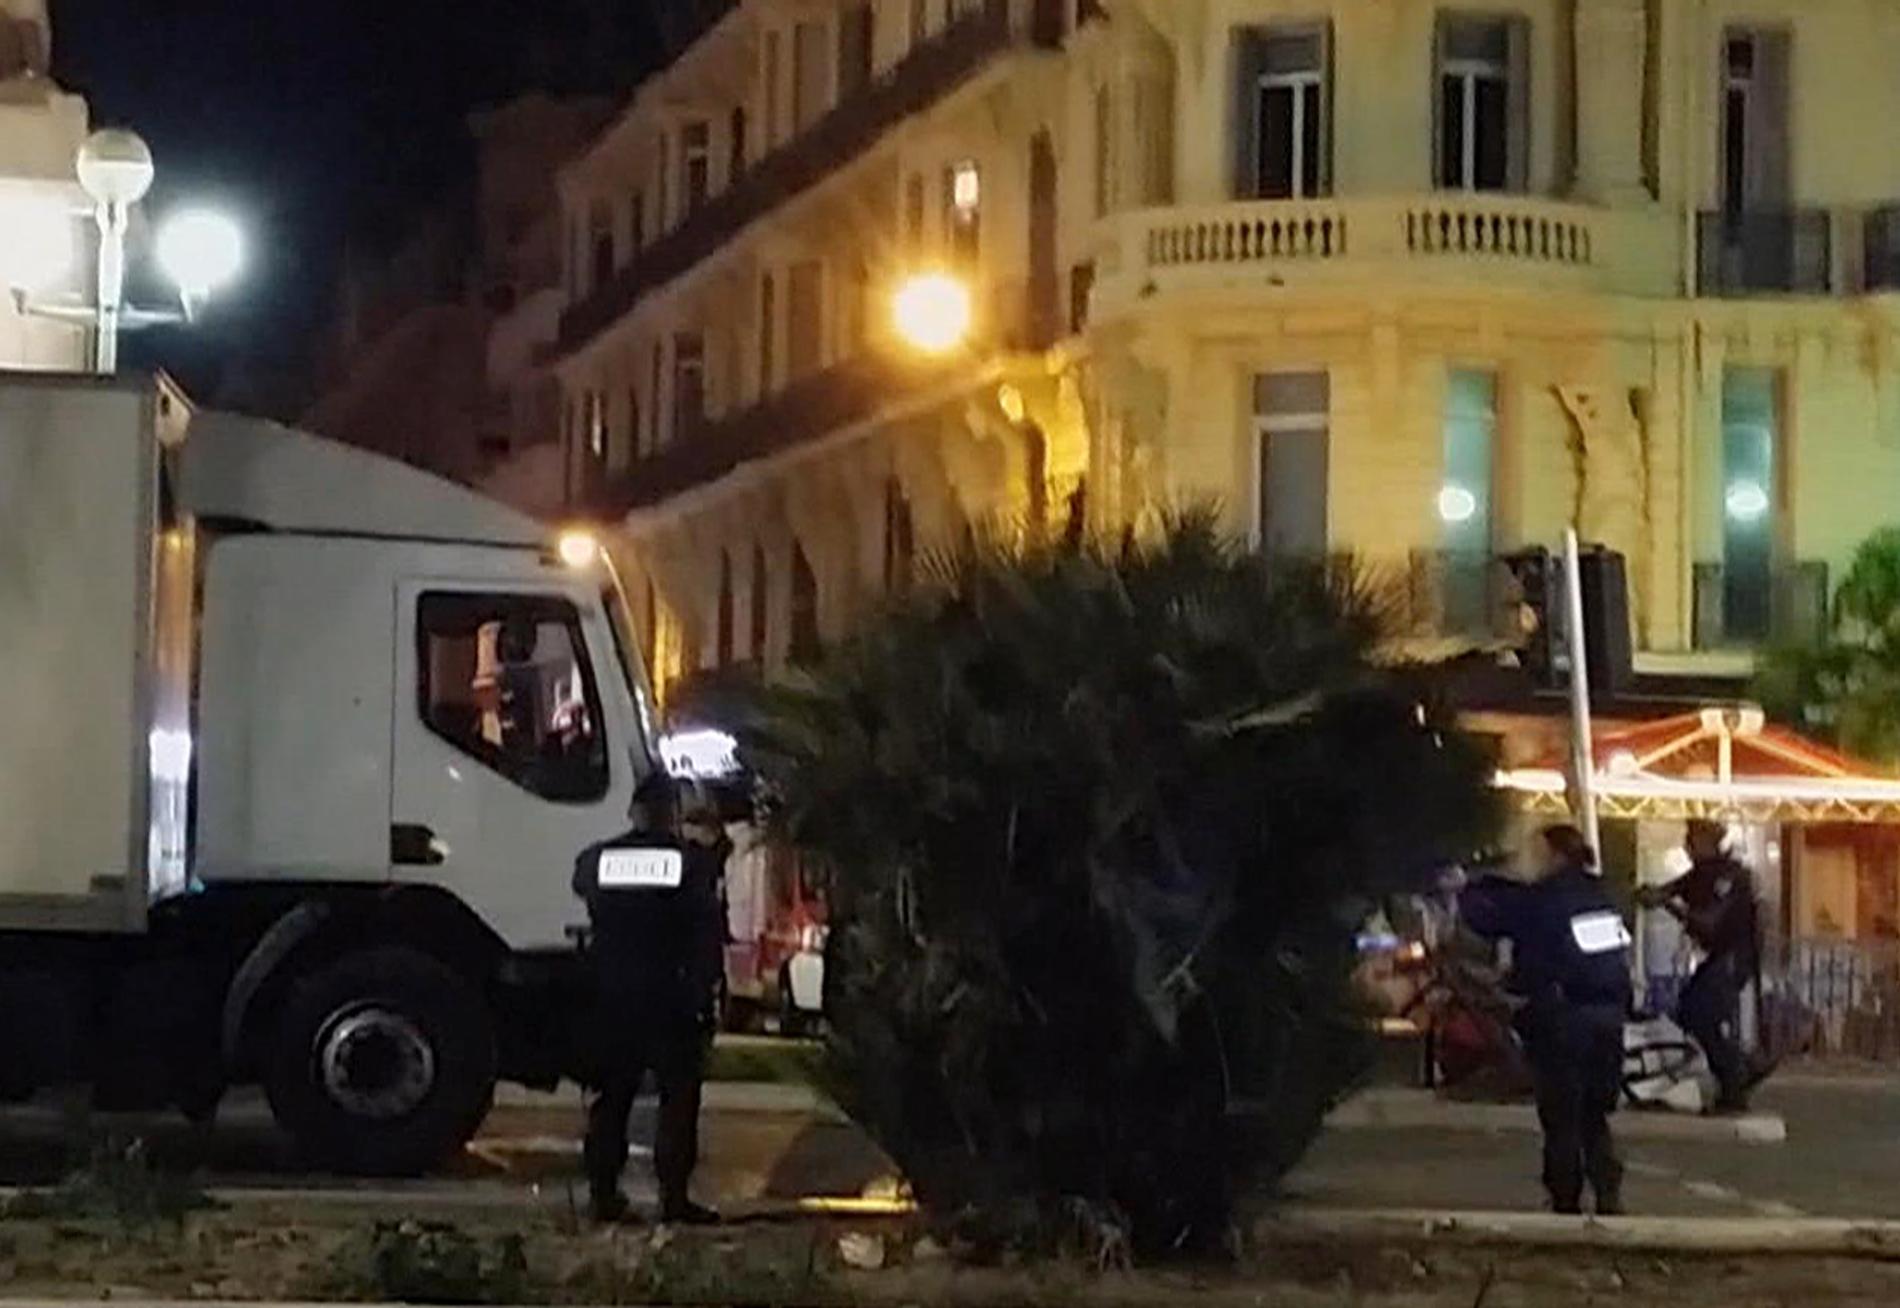 Polis vid den lastbil som användes vid terrordådet i Nice i Frankrike 2016. Massmördaren sköts ihjäl efter dådet. Arkivbild.